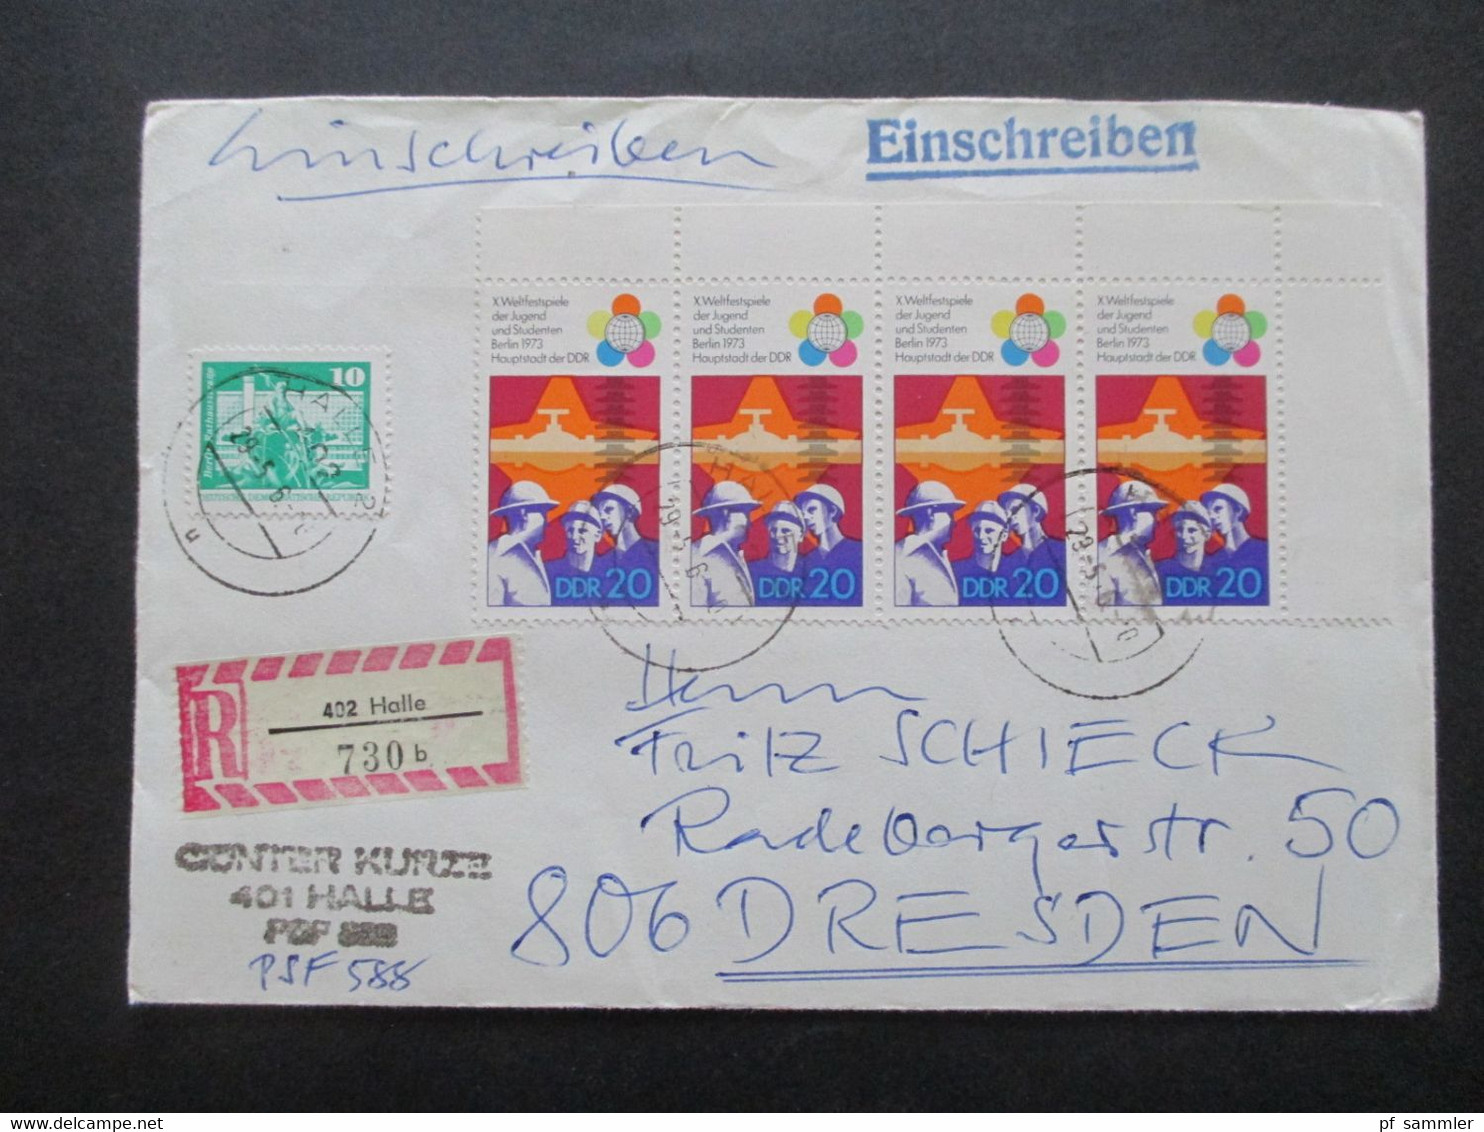 DDR 1970er Jahre insgesamt 28 Belege Wertbriefe / Einschreiben! Schöne Frankaturen / auch Einheiten! Stöberposten!